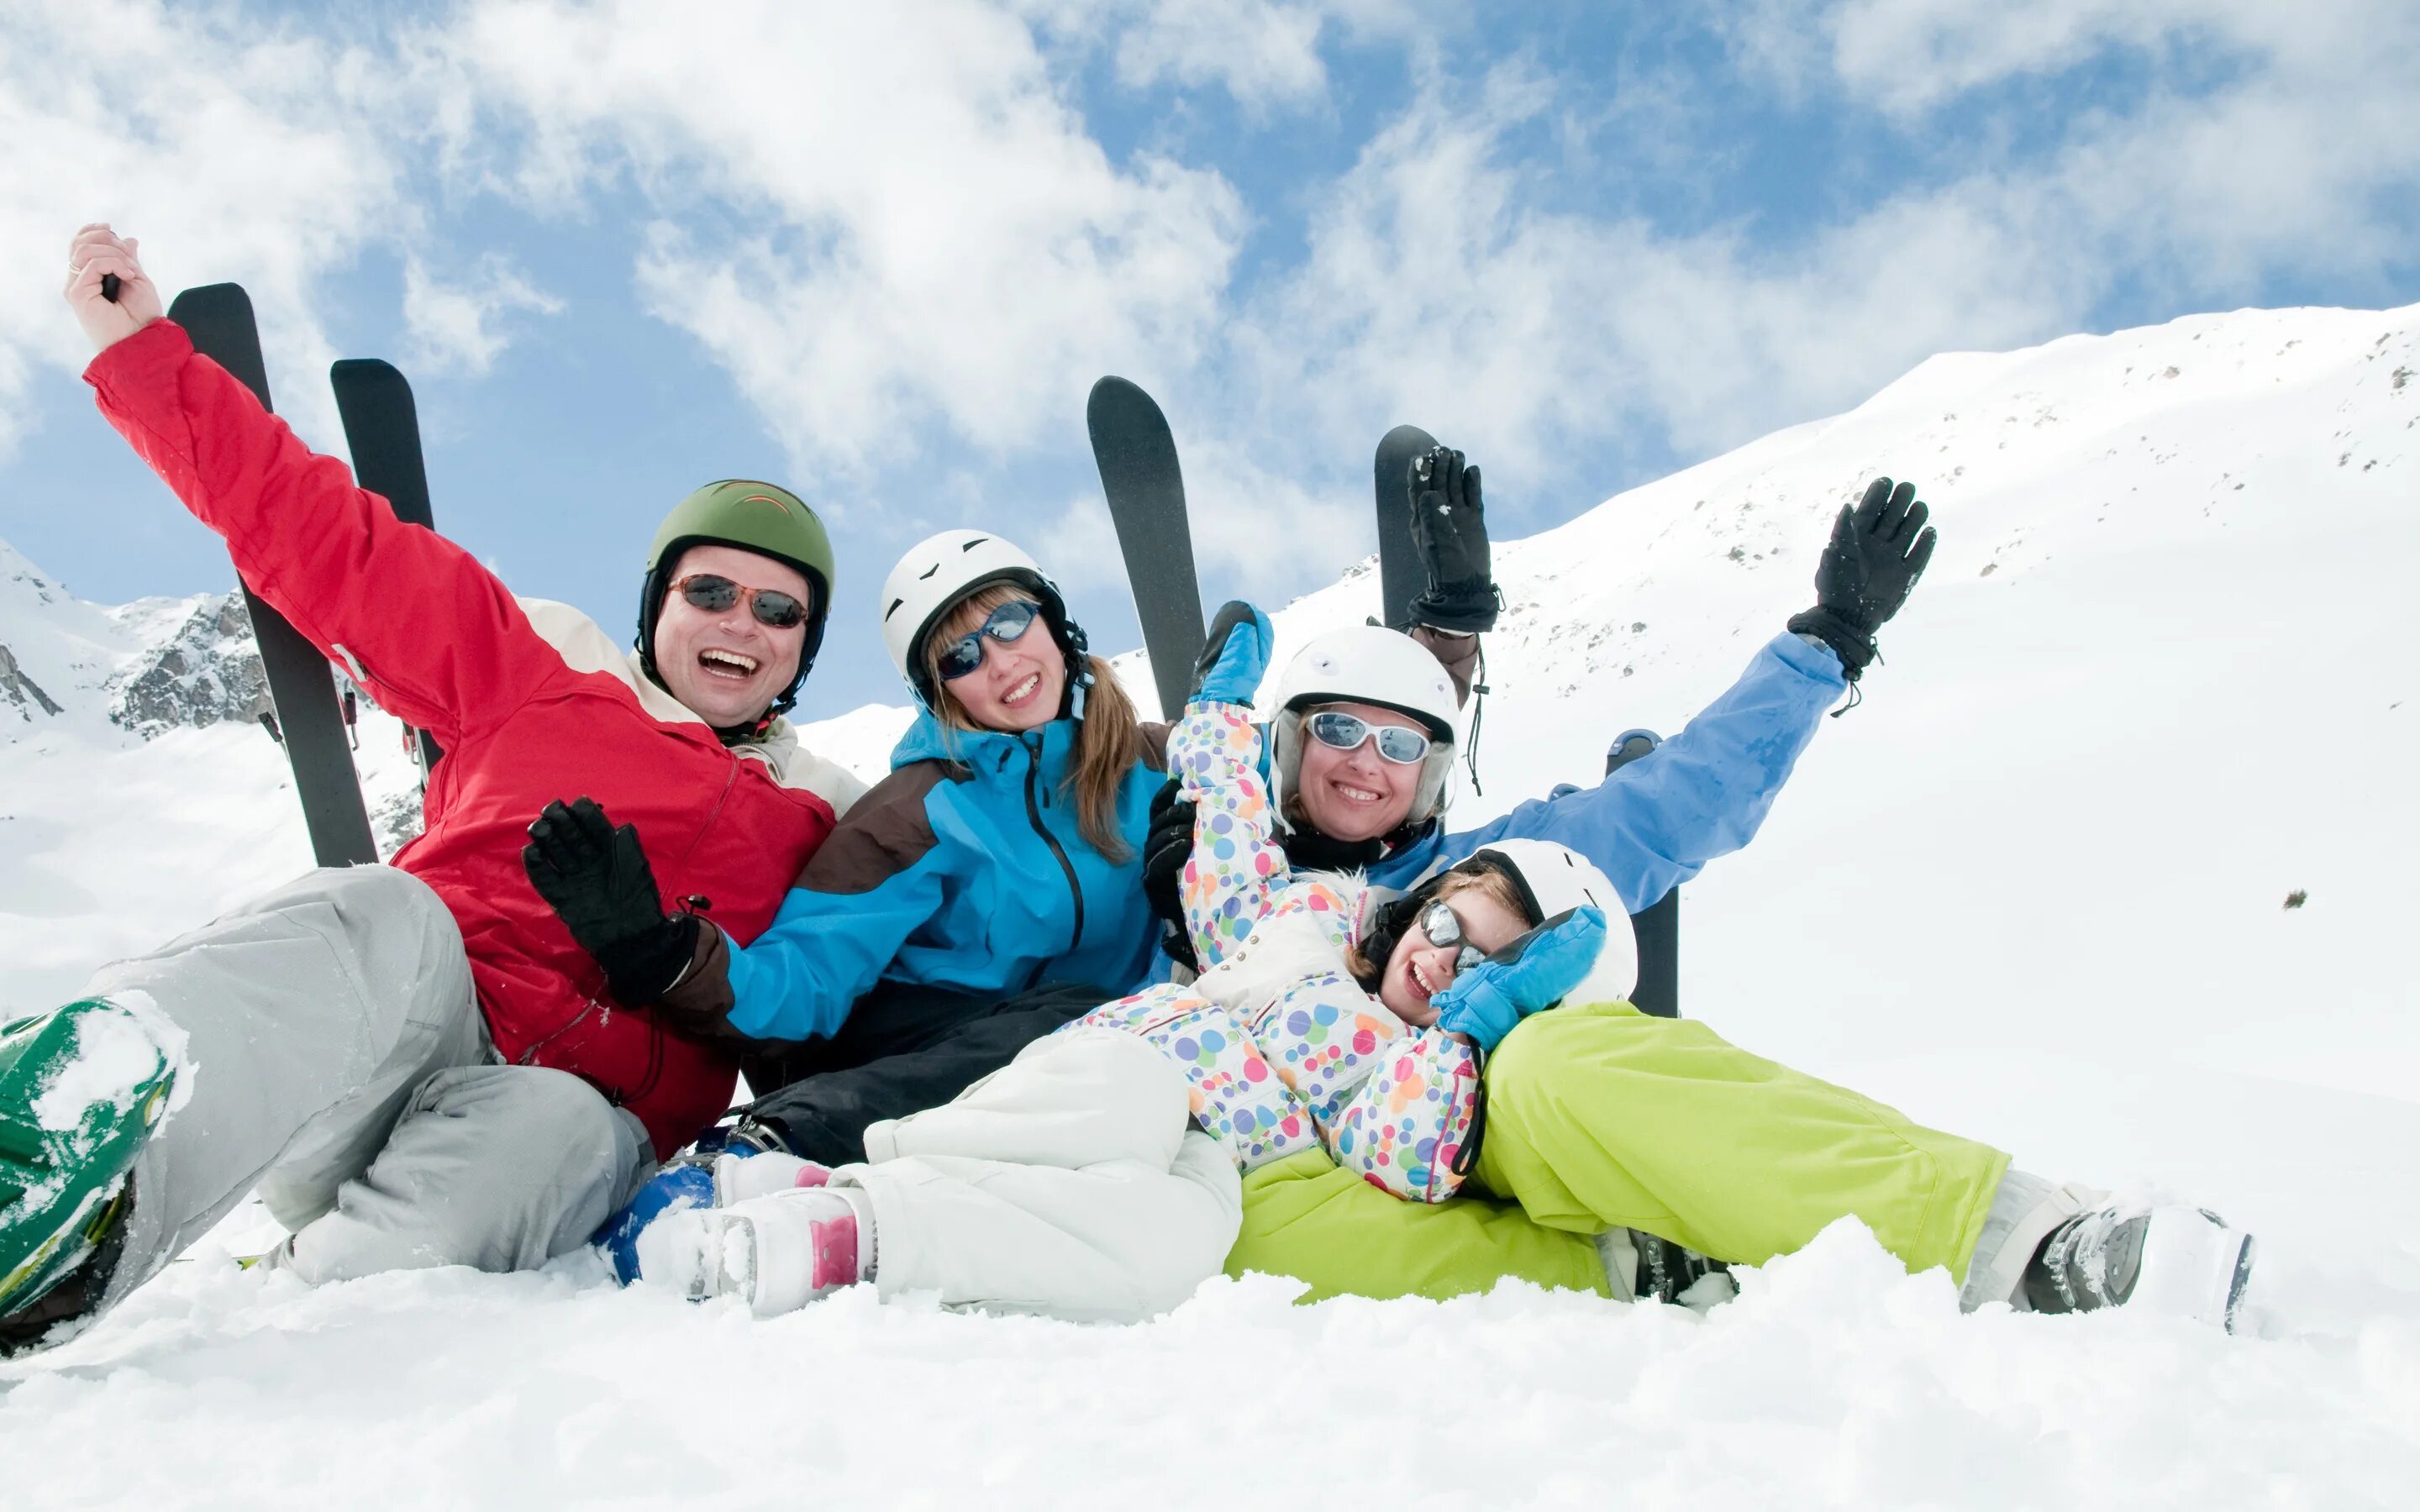 Катание на горнолыжном курорте. Зимние развлечения. Активная семья зимой. Горнолыжка семья. Люди на горнолыжном курорте.